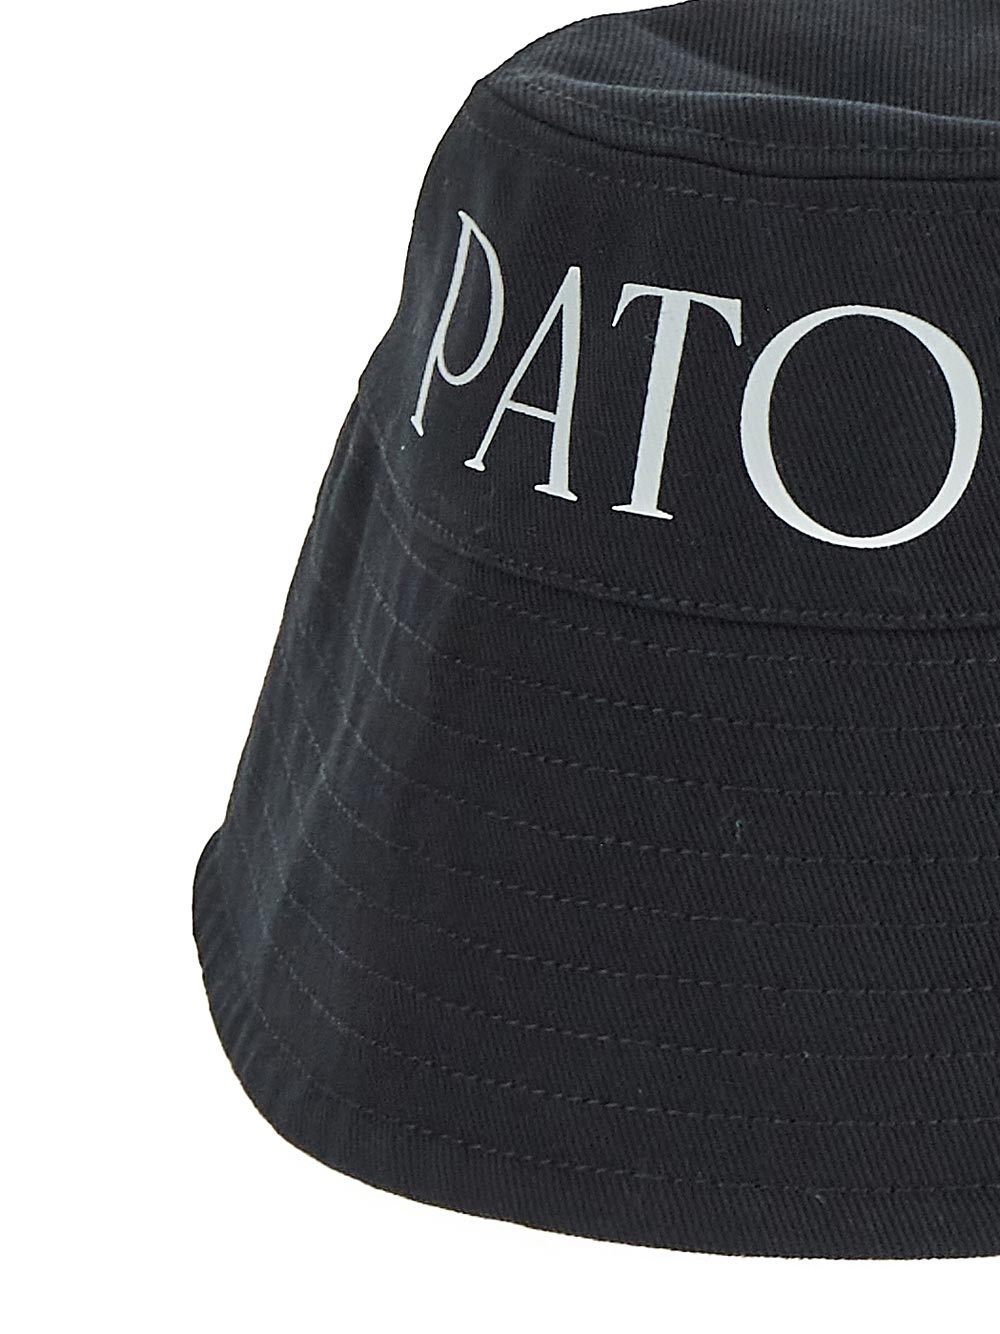 Patou PATOU Hat black AC0270132999B